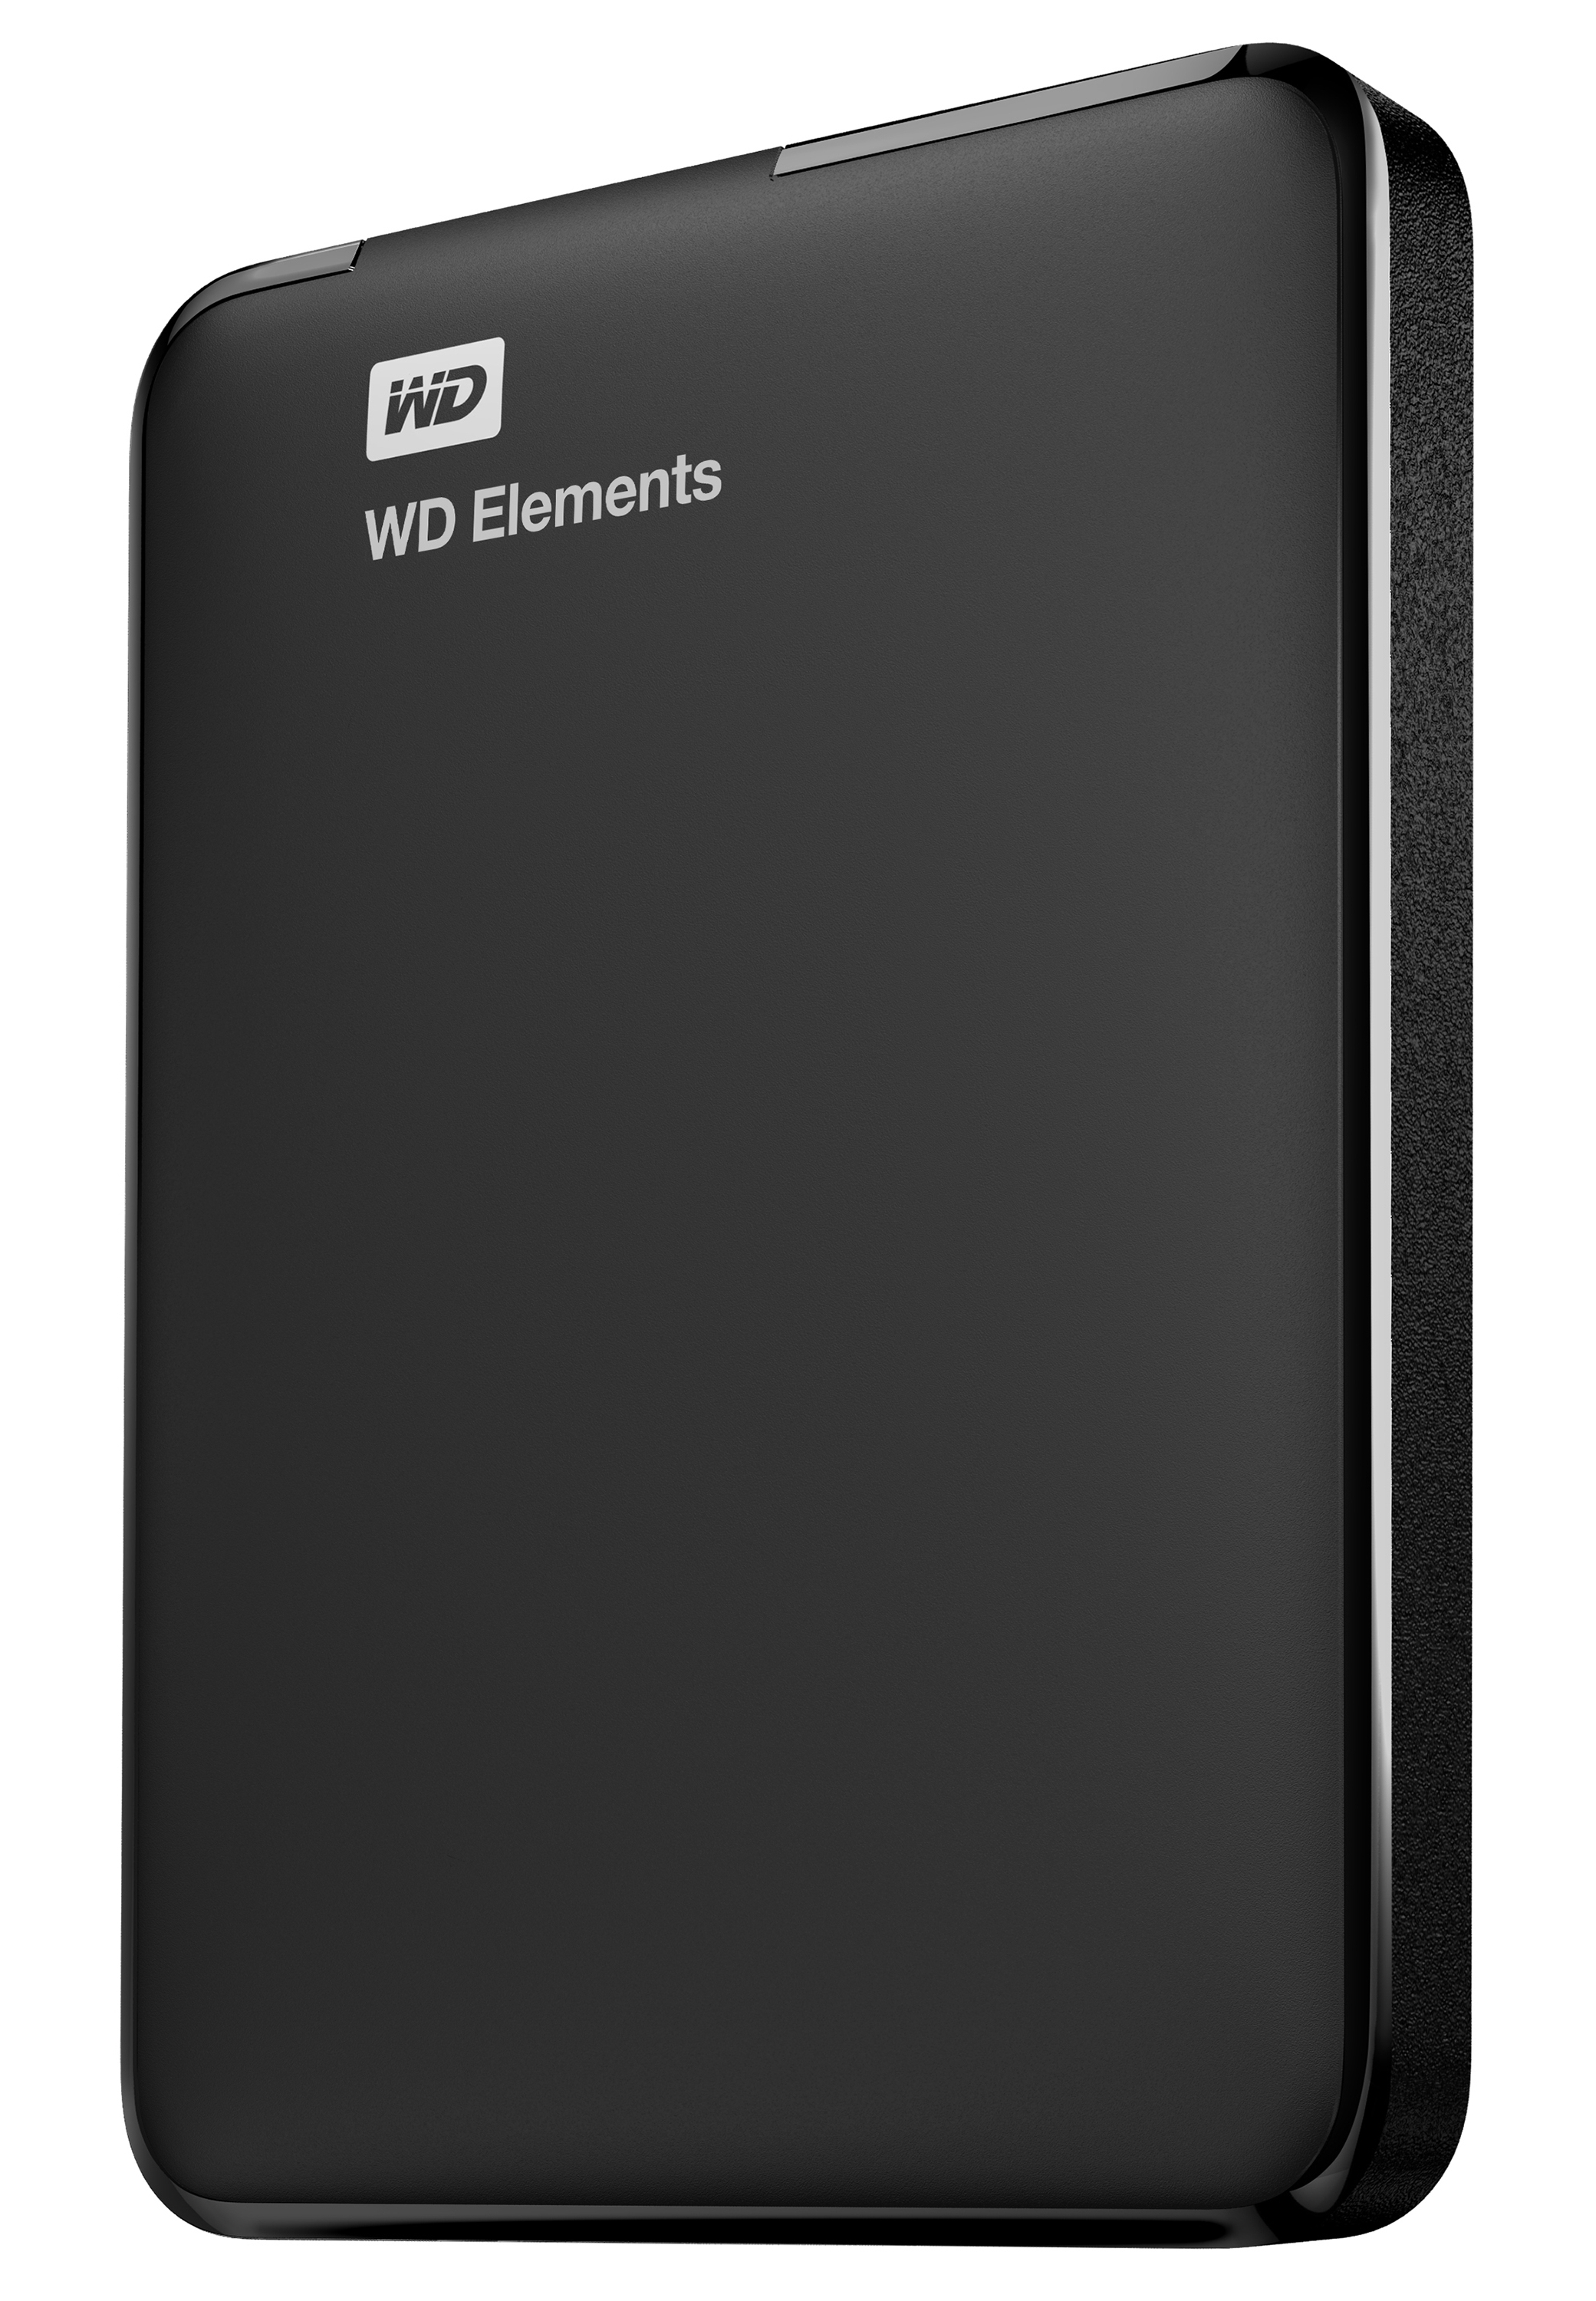 Advertentie Fantastisch roestvrij Western Digital WD Elements Portable 2.5 Inch externe HDD 1TB, Zwart  (WDBUZG0010BBK-WESN) kopen » Centralpoint